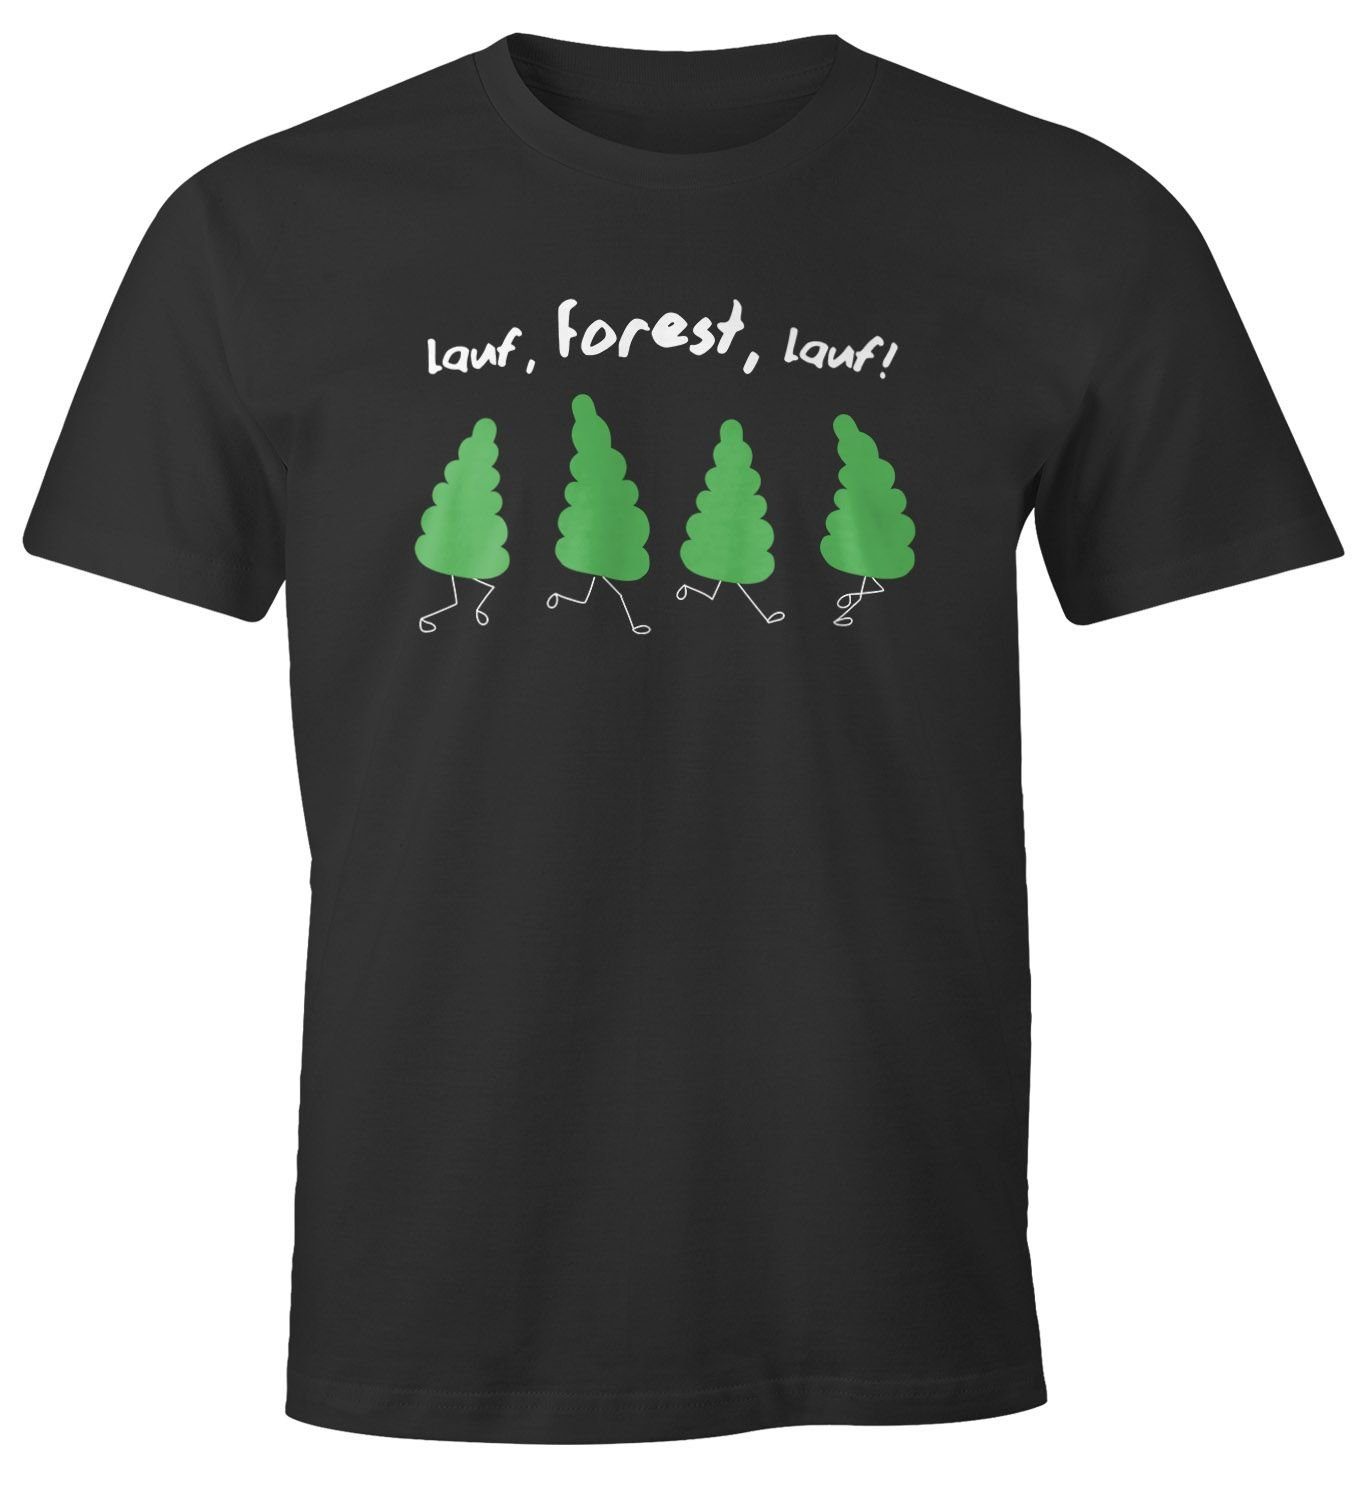 MoonWorks Print-Shirt Herren T-Shirt Fun-Shirt Spruch lustig lauf Forest lauf Baum Motiv Parodie Filmzitat Wortspiel Moonworks® mit Print